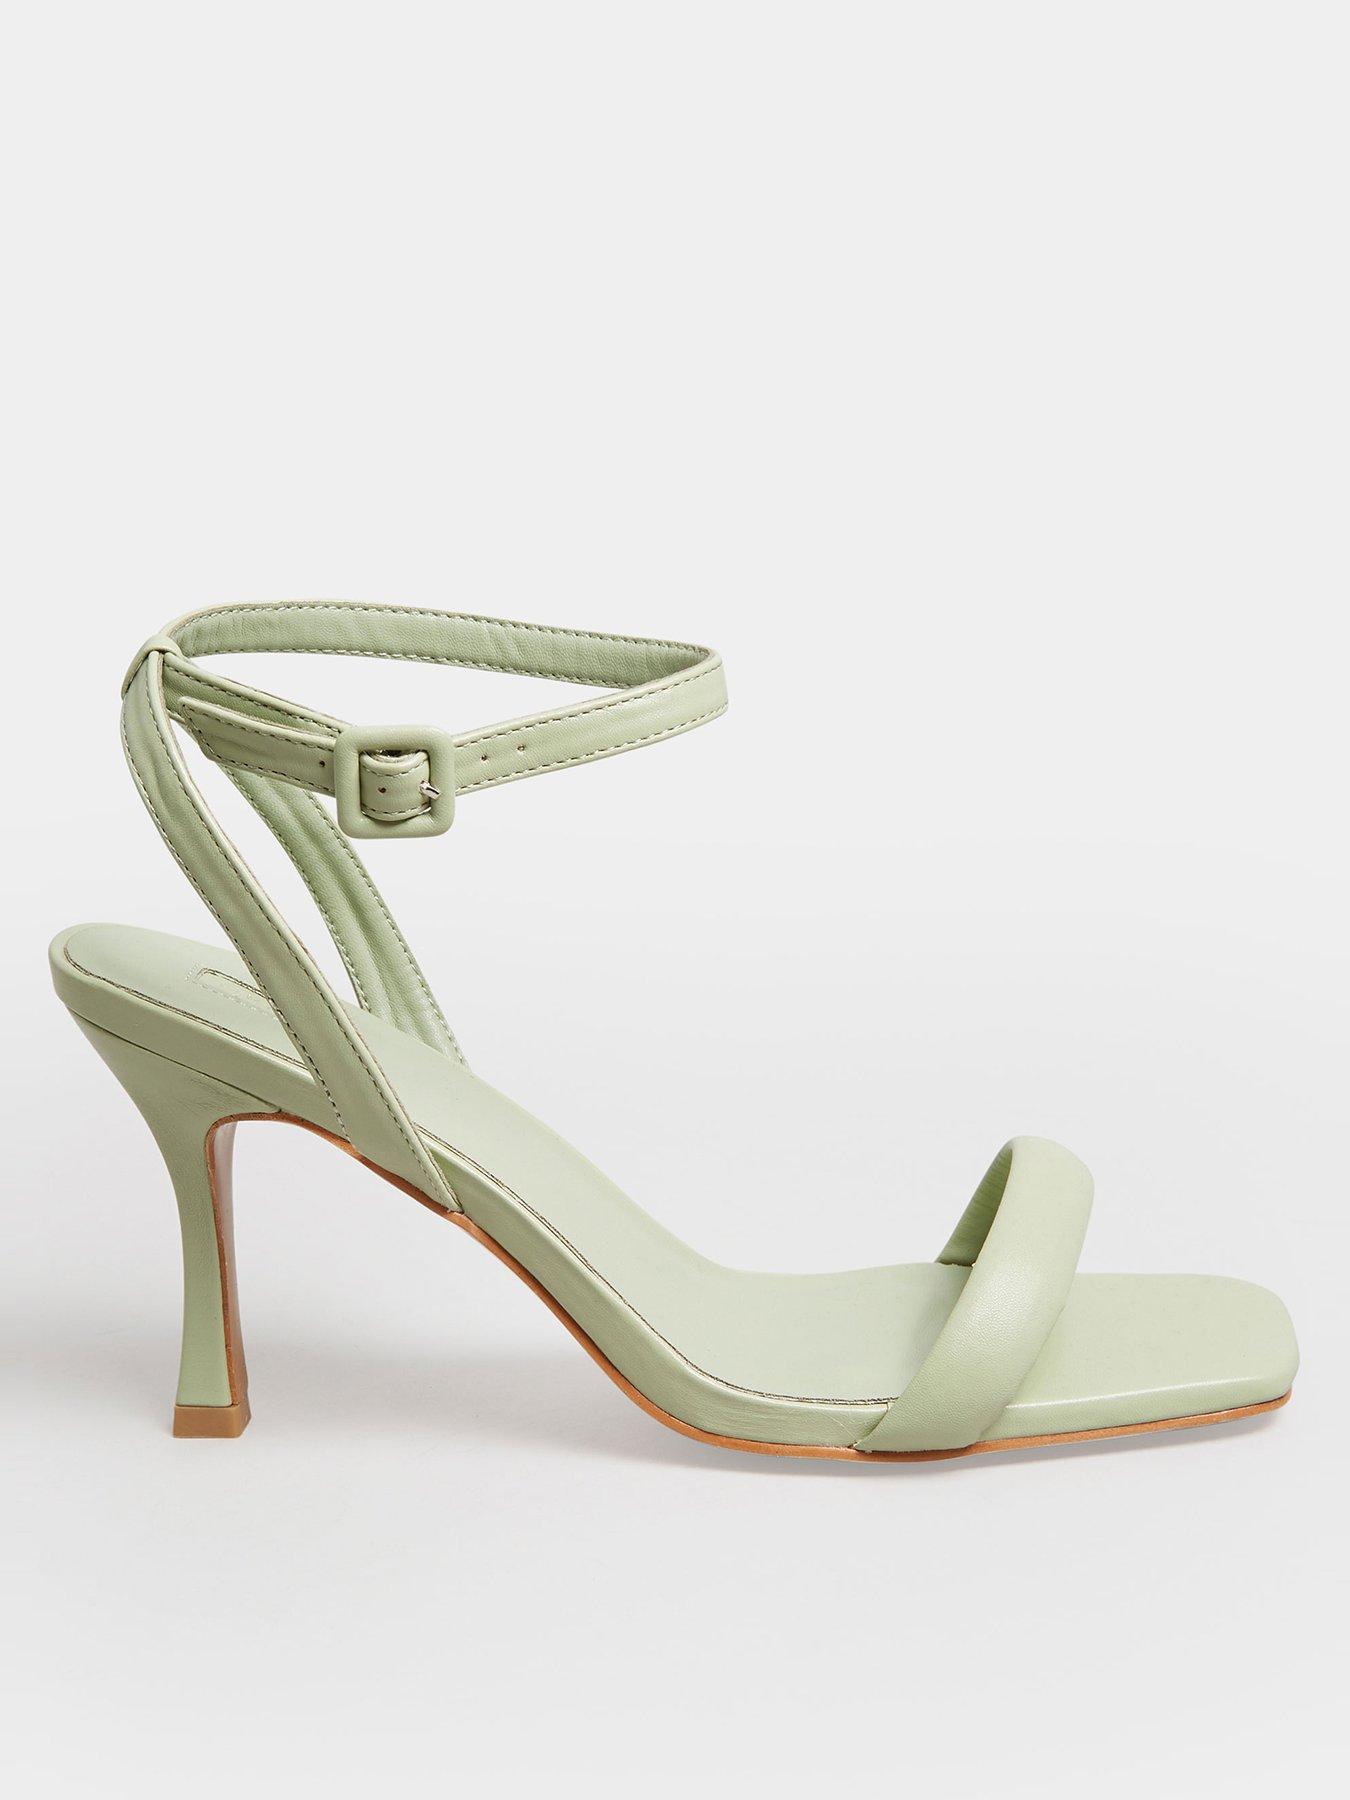 Nude Paten 3.5 inch heels. Very comfortable to... - Depop